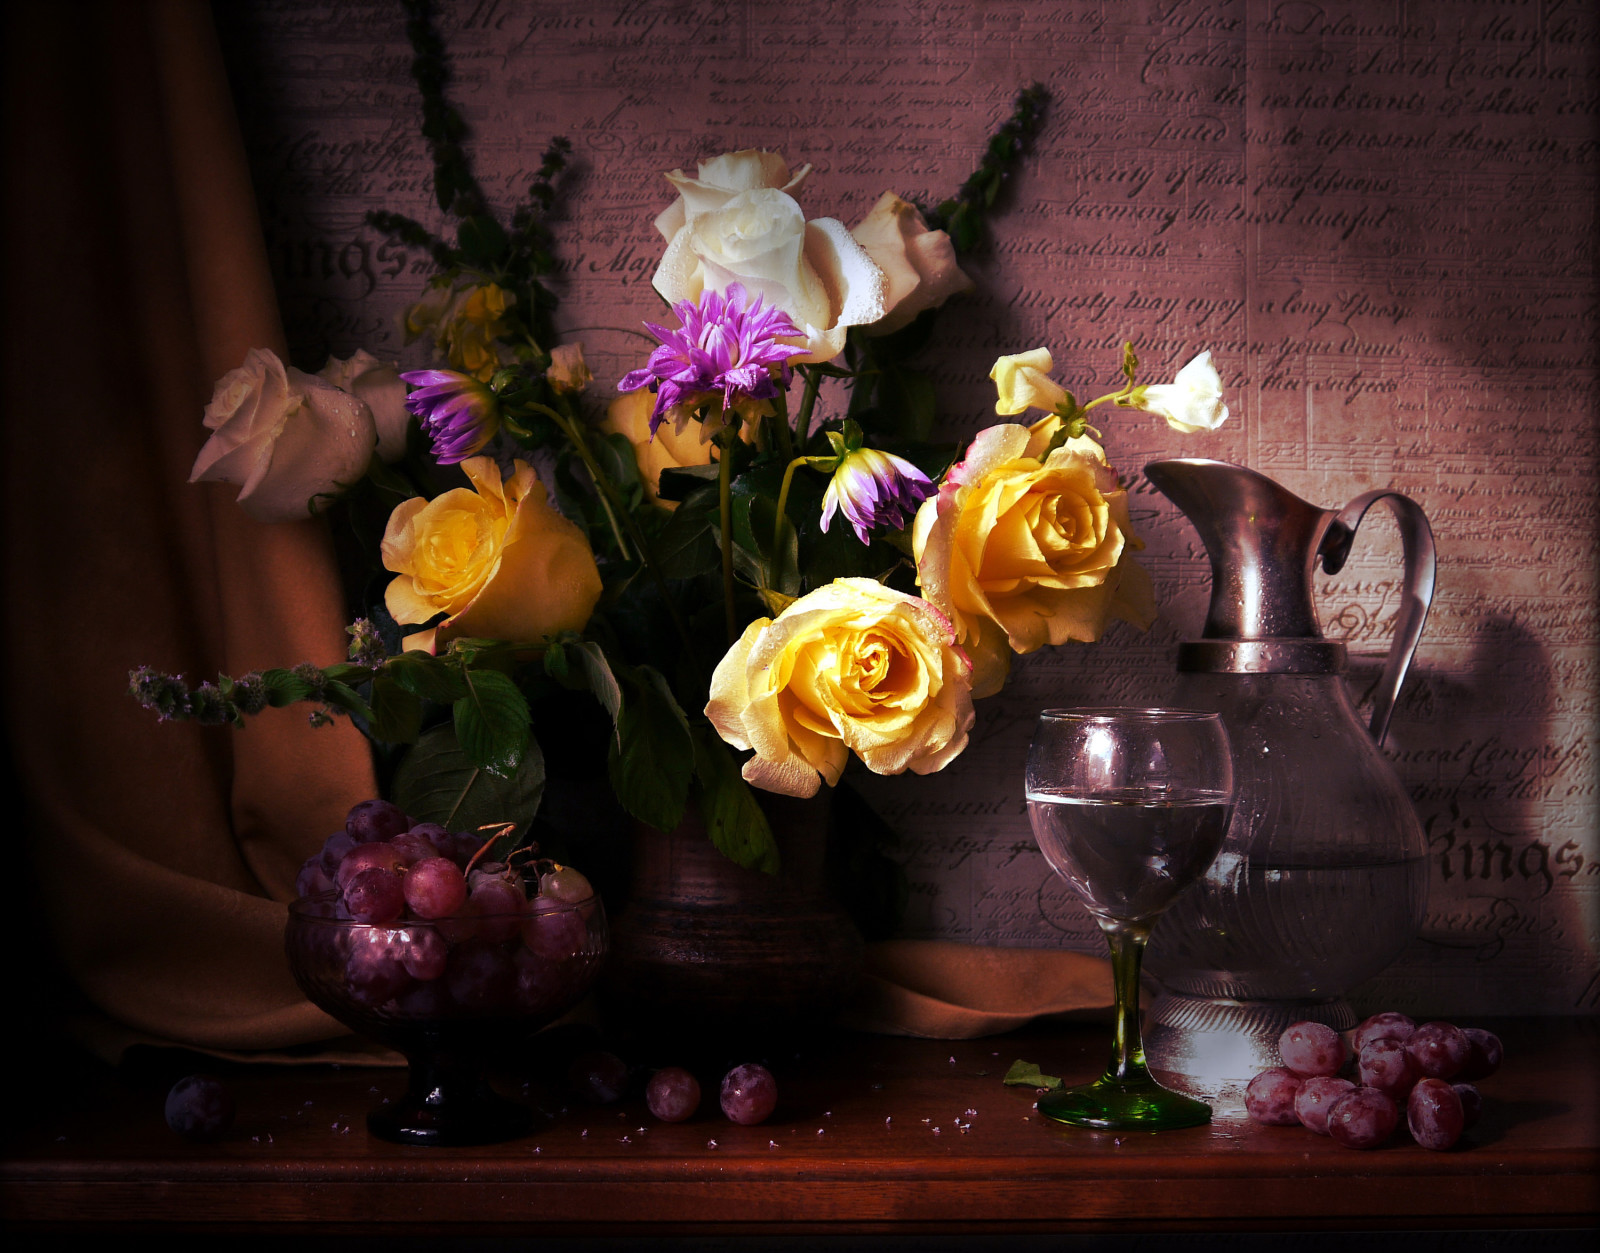 Masih hidup, mawar, peony, bunga-bunga, kacamata, foto, vas, kendi